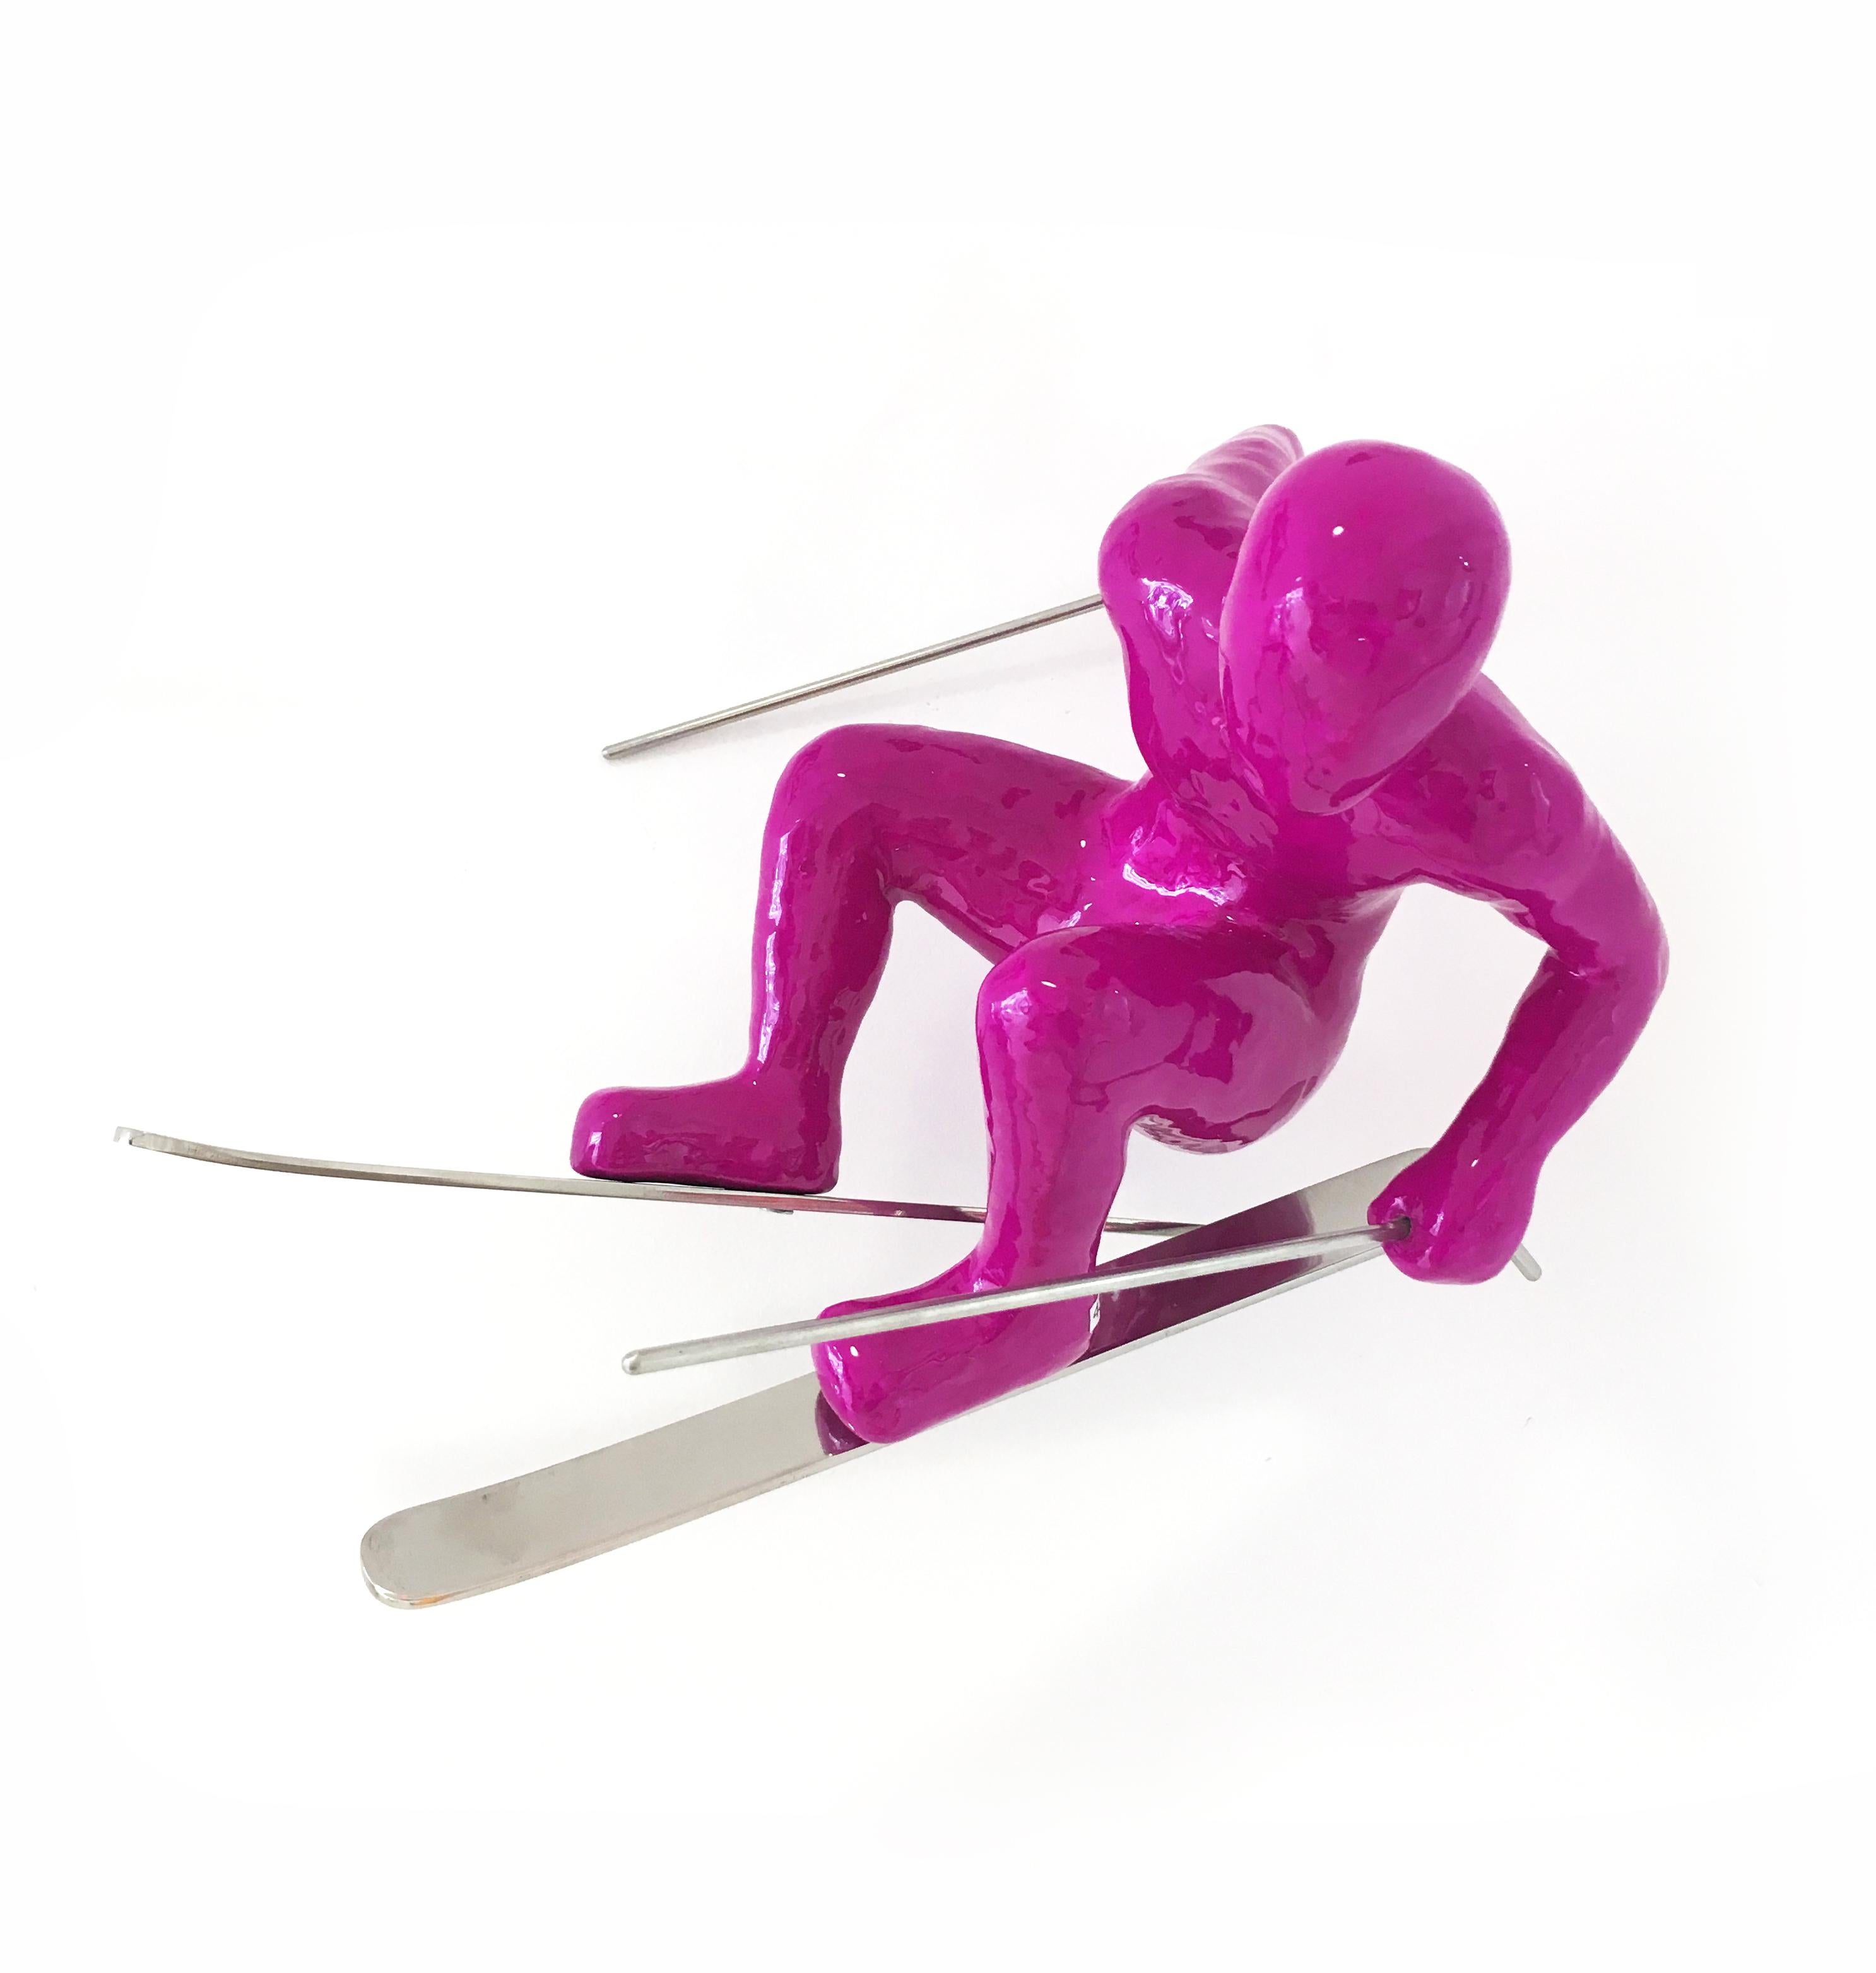 Ancizar Marin Figurative Sculpture - Skier (Magenta), Resin